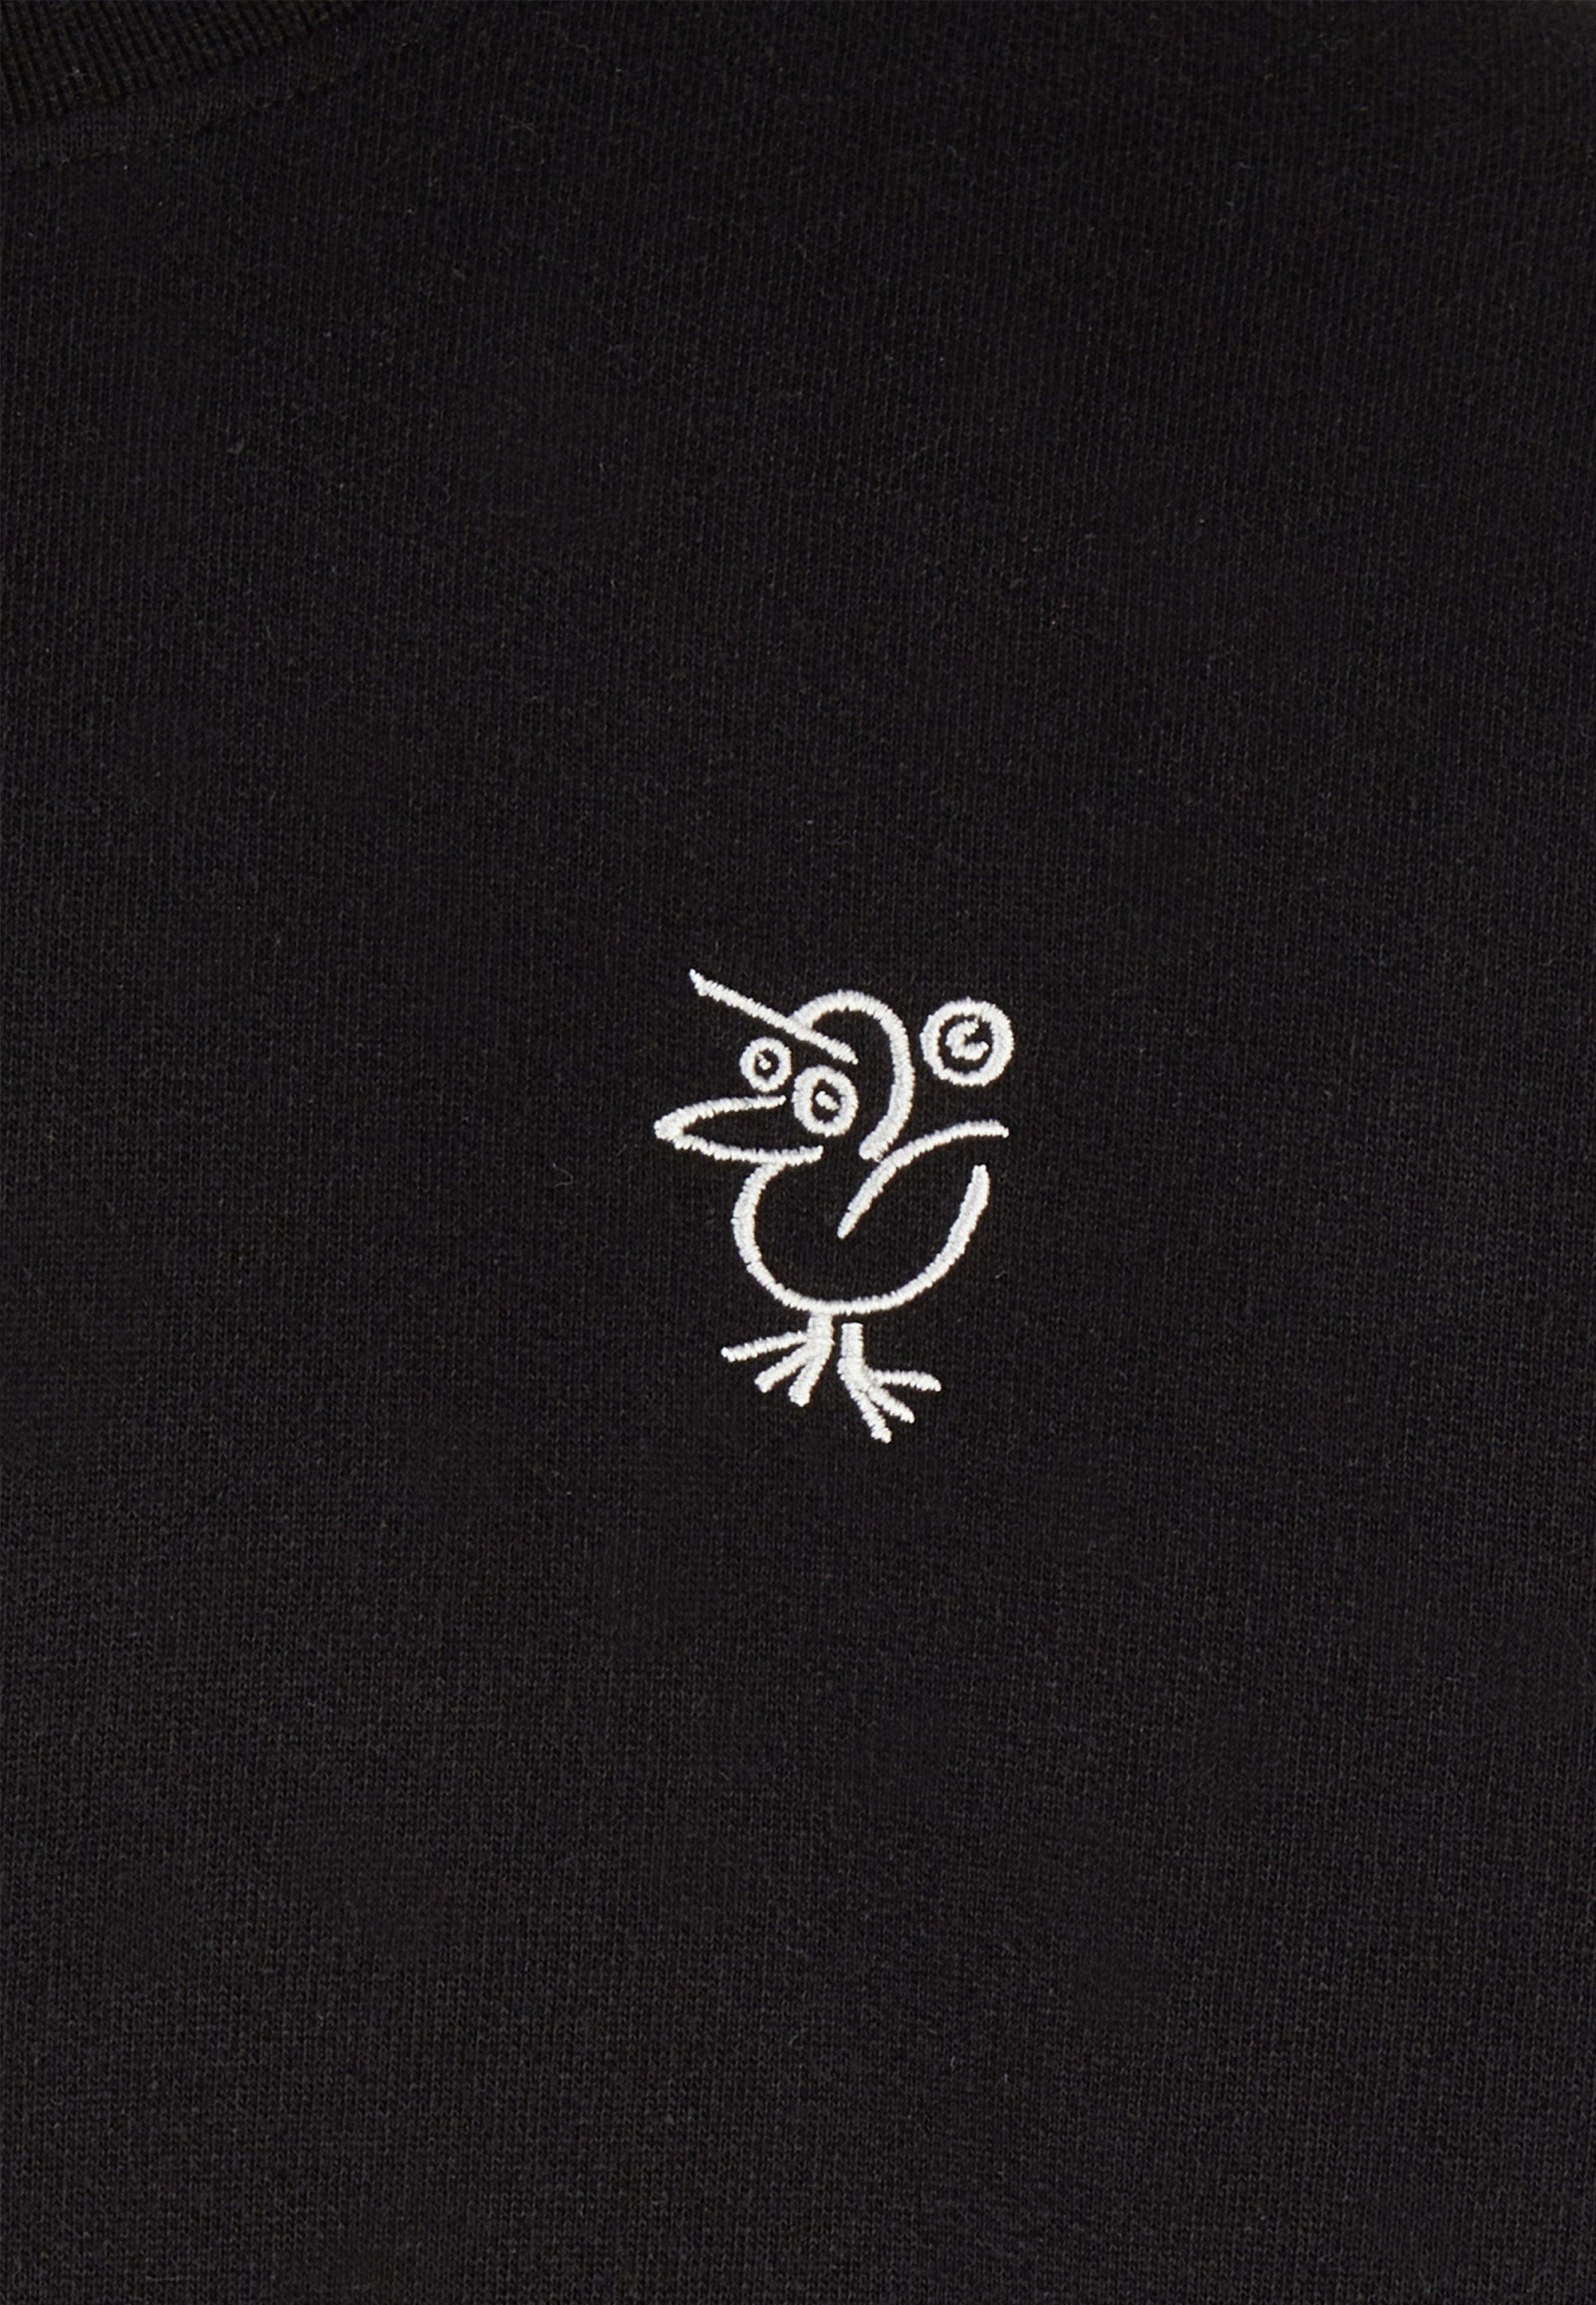 Strickpullover mit Cleptomanicx Schnitt schwarz lockerem Sketch Gull